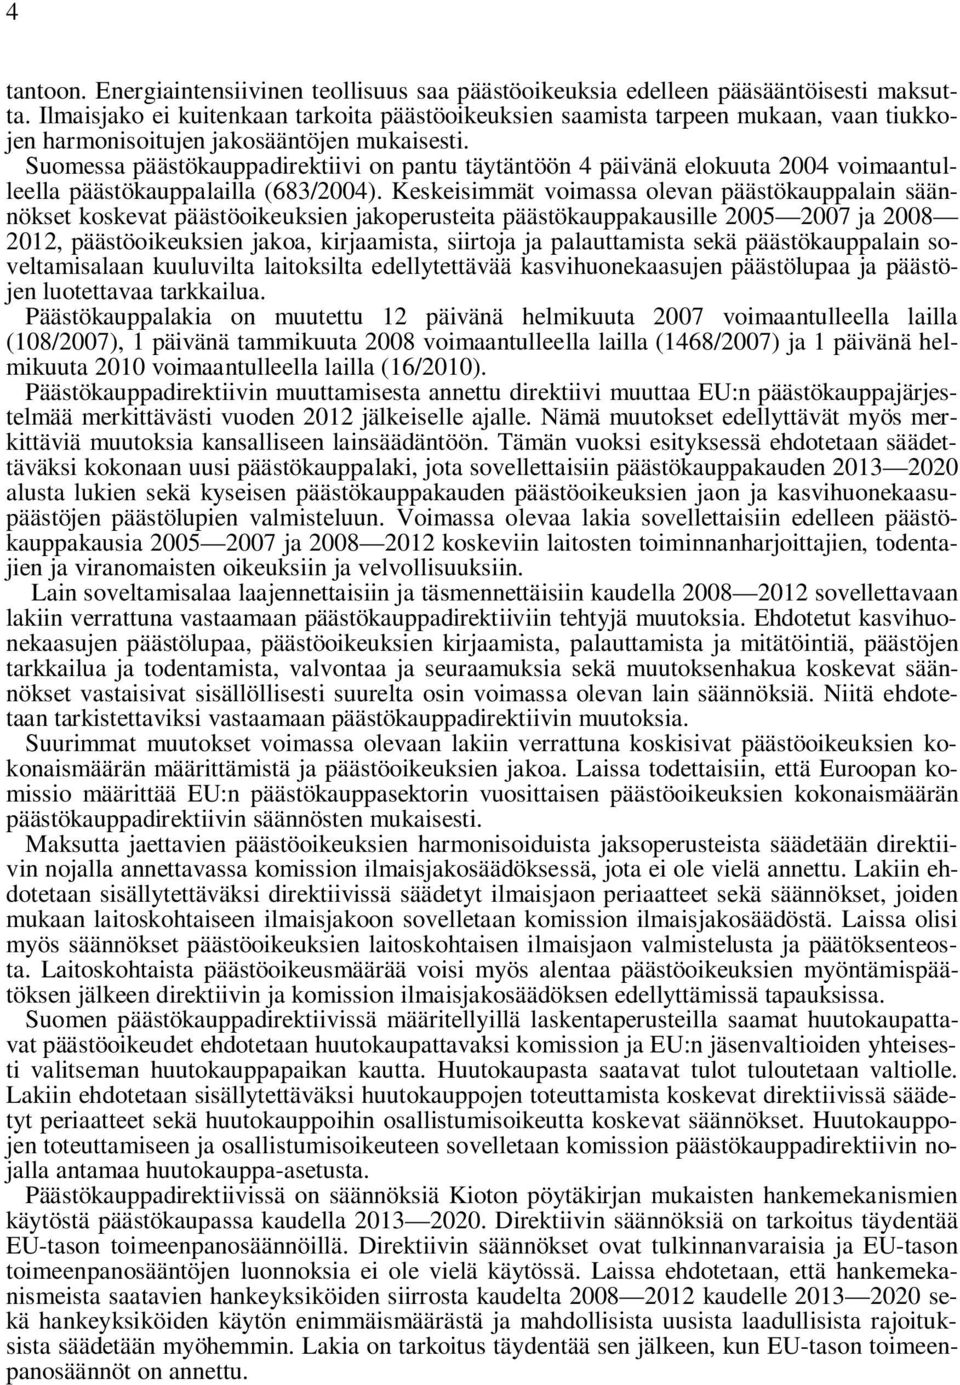 Suomessa päästökauppadirektiivi on pantu täytäntöön 4 päivänä elokuuta 2004 voimaantulleella päästökauppalailla (683/2004).